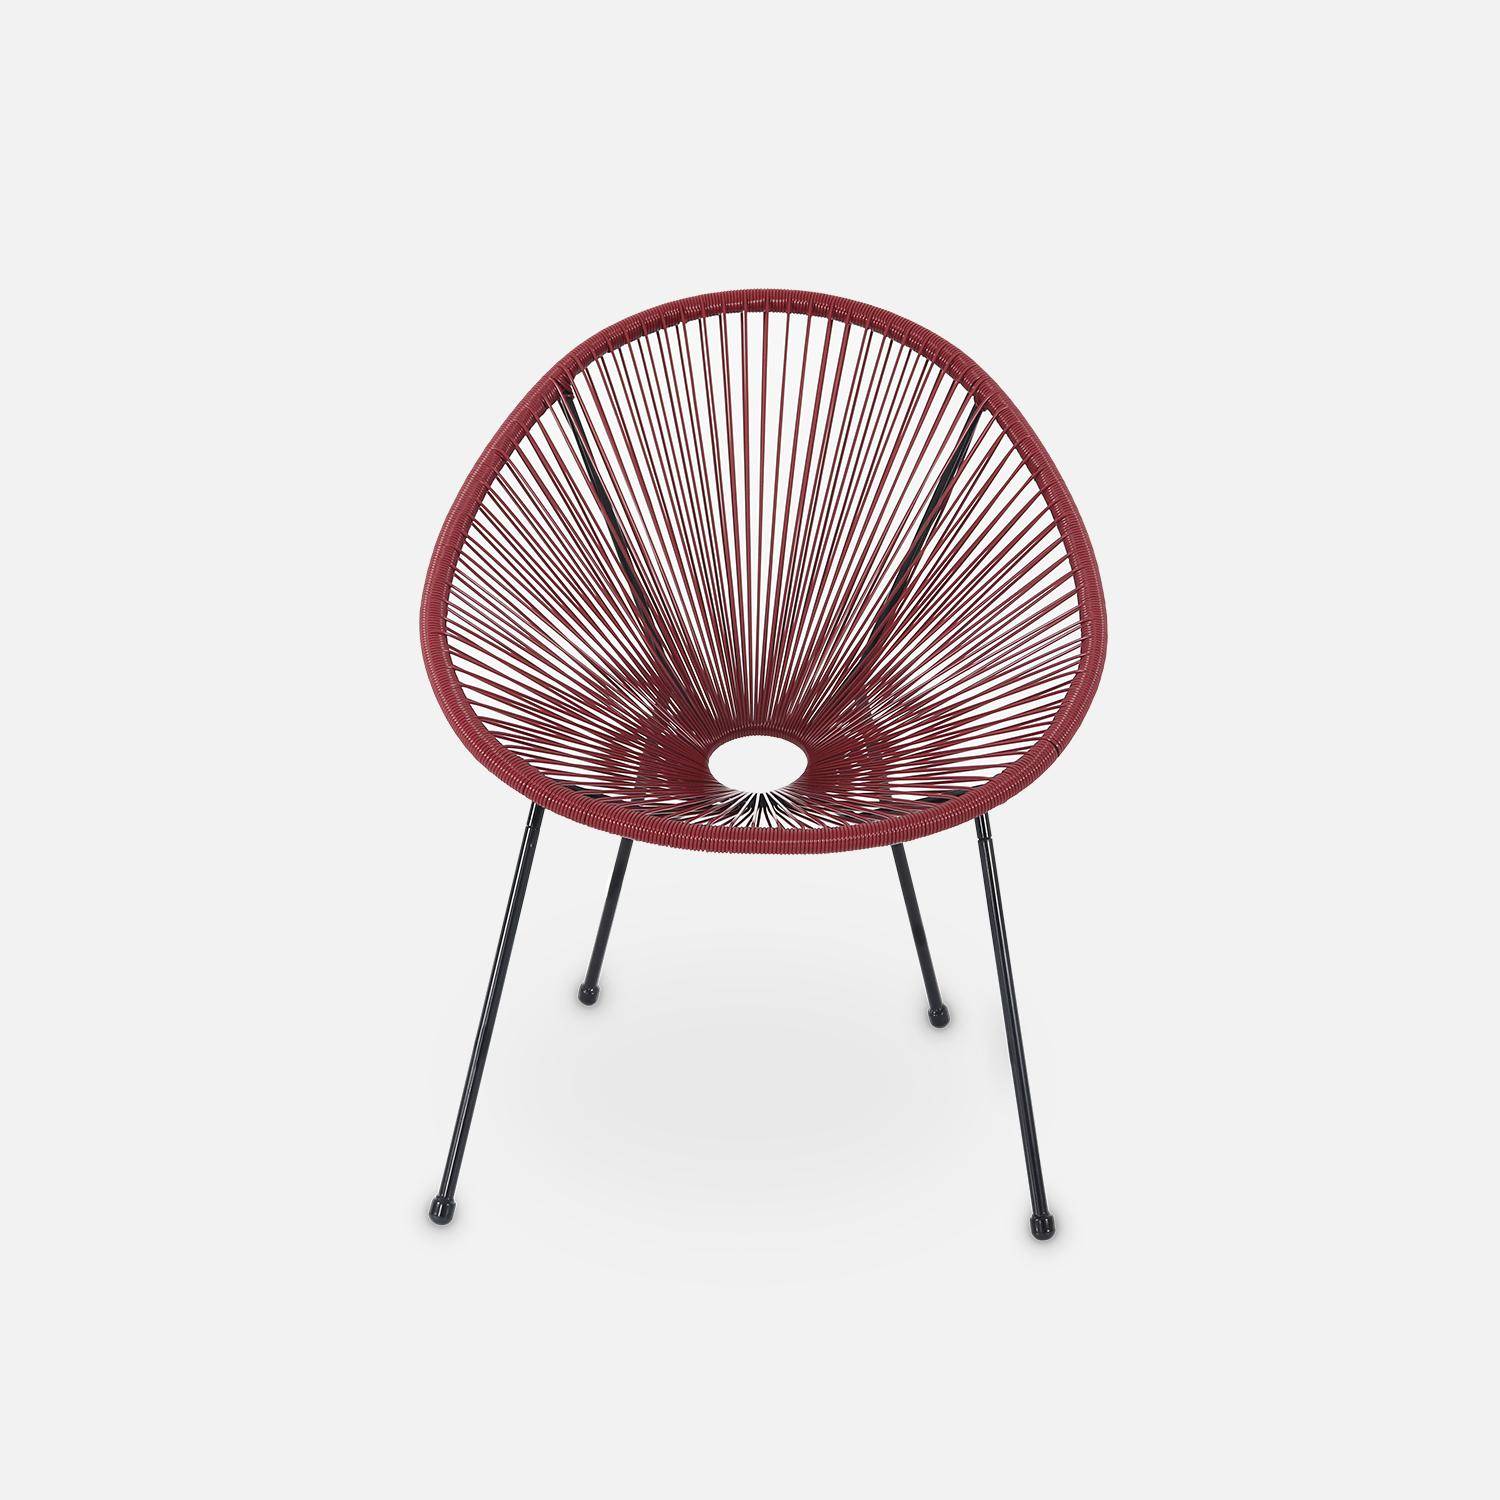 ACAPULCO stoel ei-vormig -Bordeaux- Stoel 4 poten retro design, plastic koorden, binnen/buiten Photo3